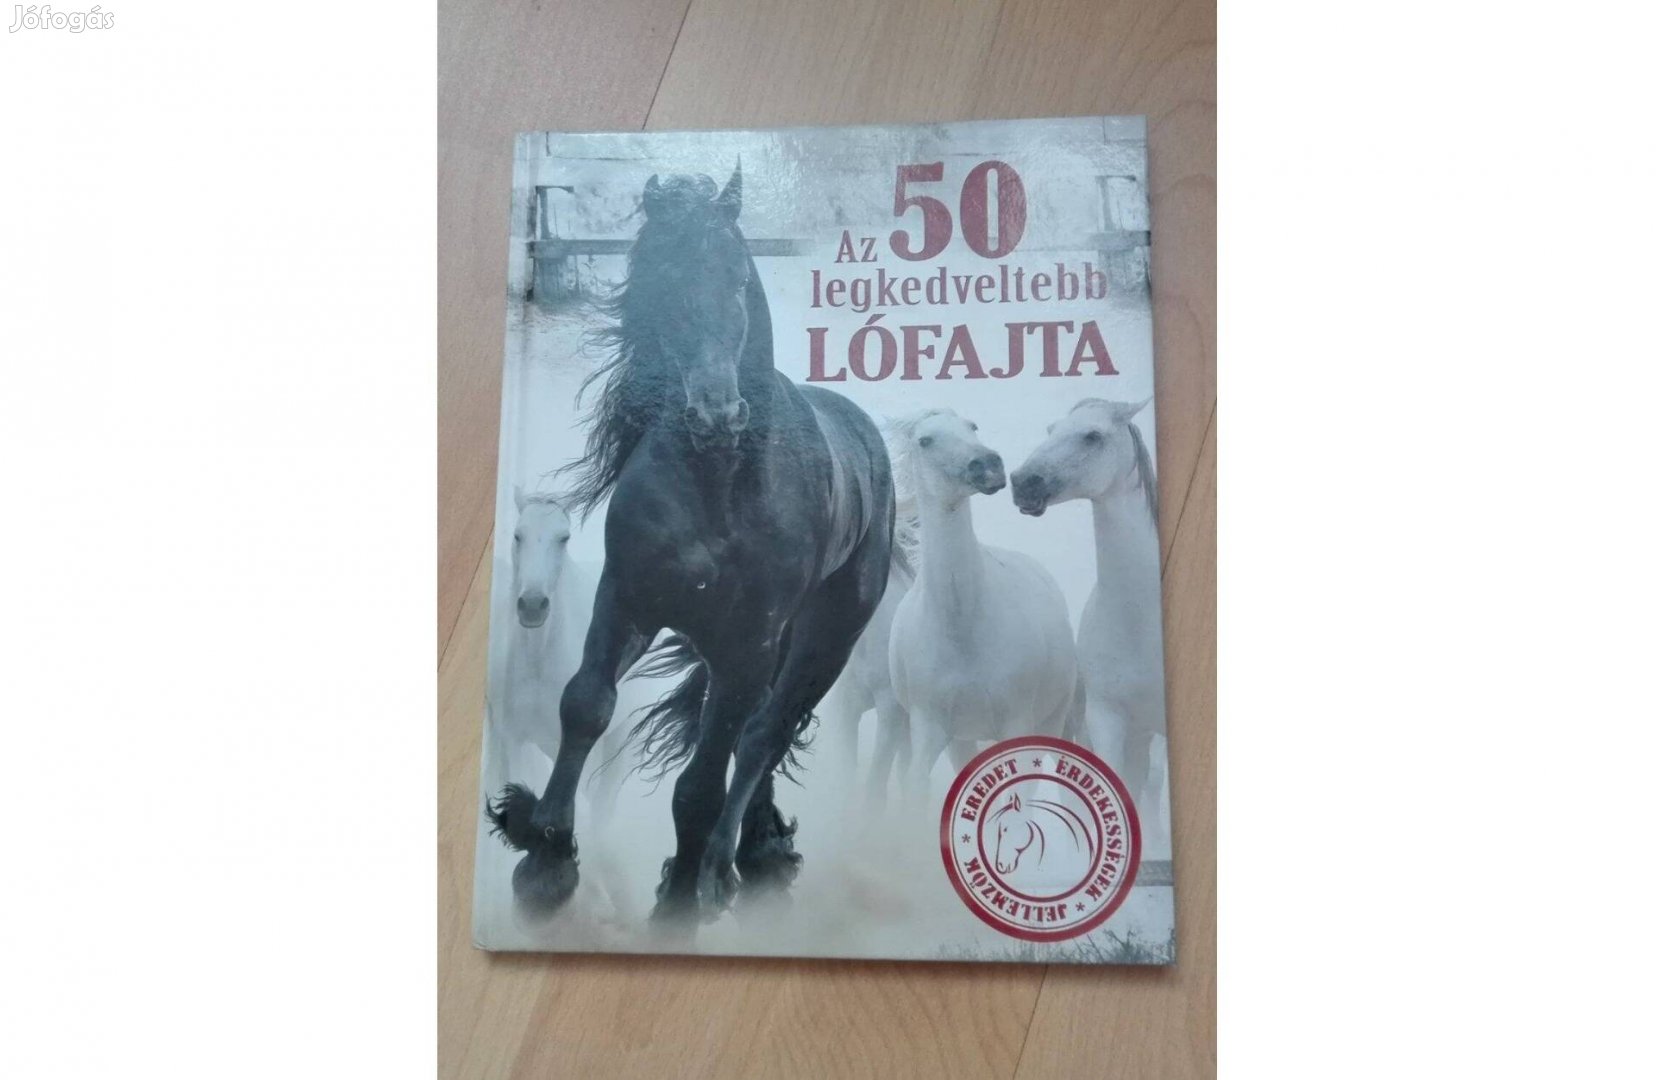 Az 50 legkedveltebb lófajta Erdélyi Magdolna